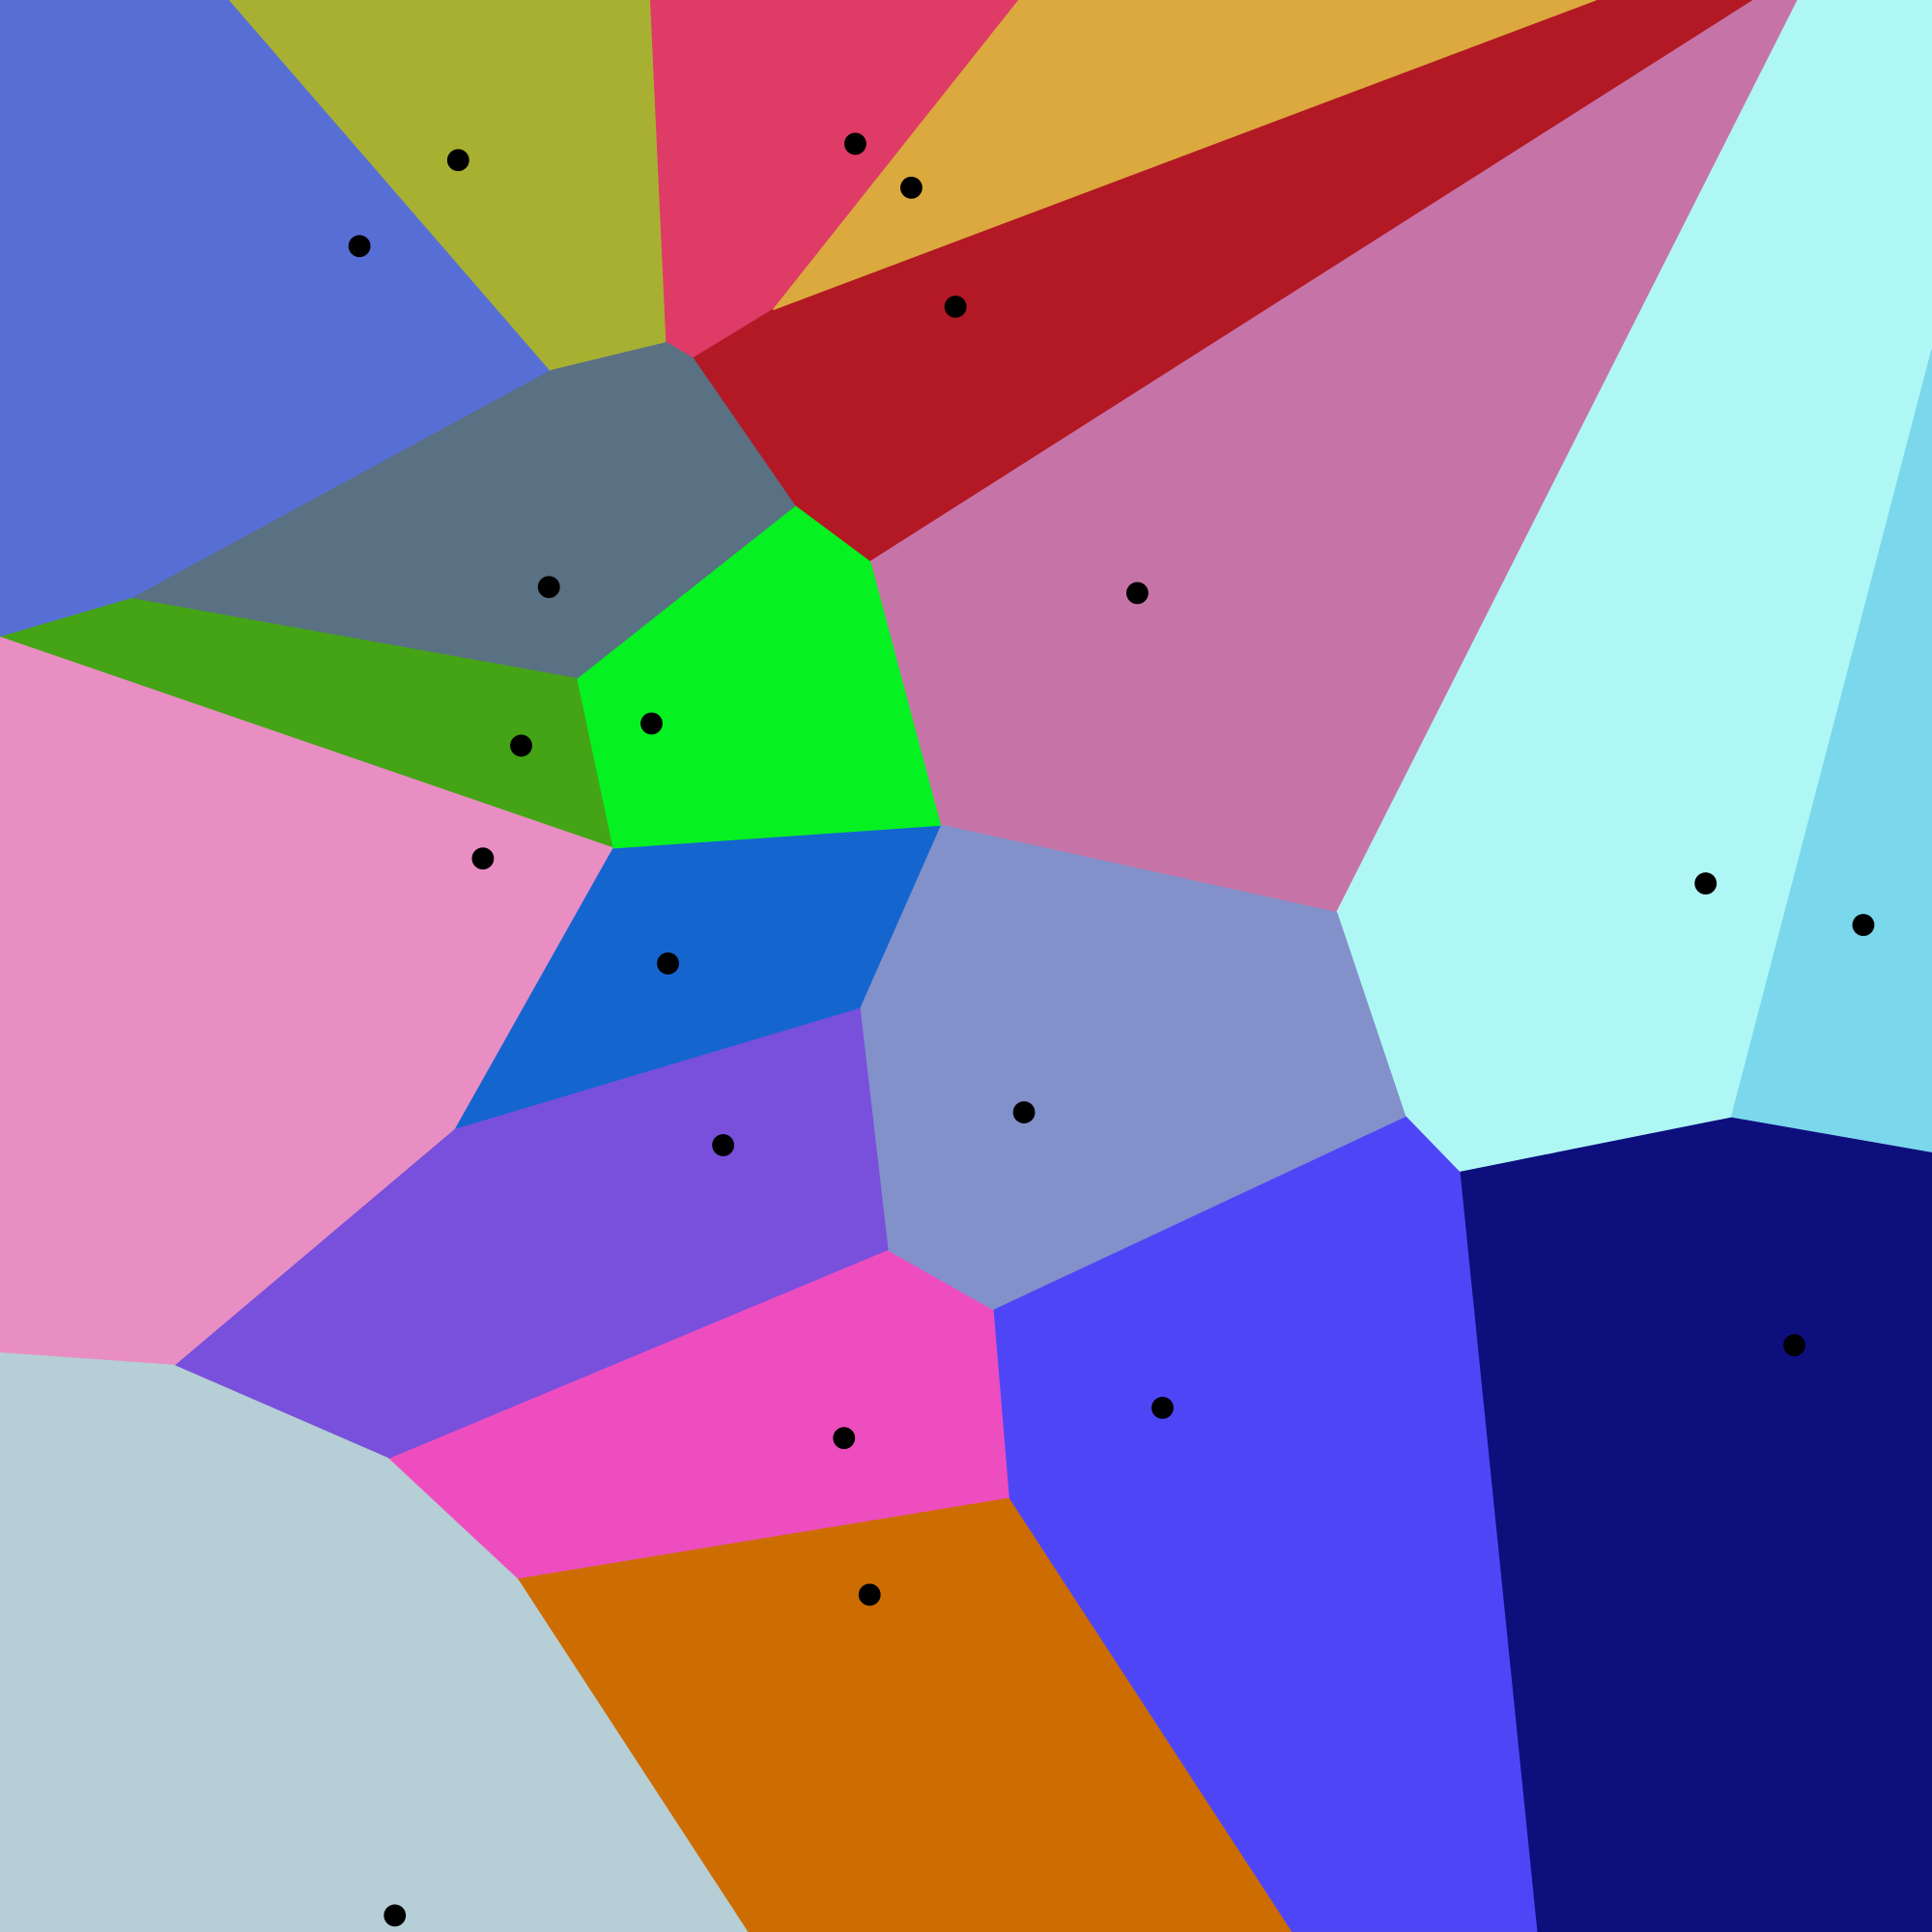 Euclidean Voronoi diagram